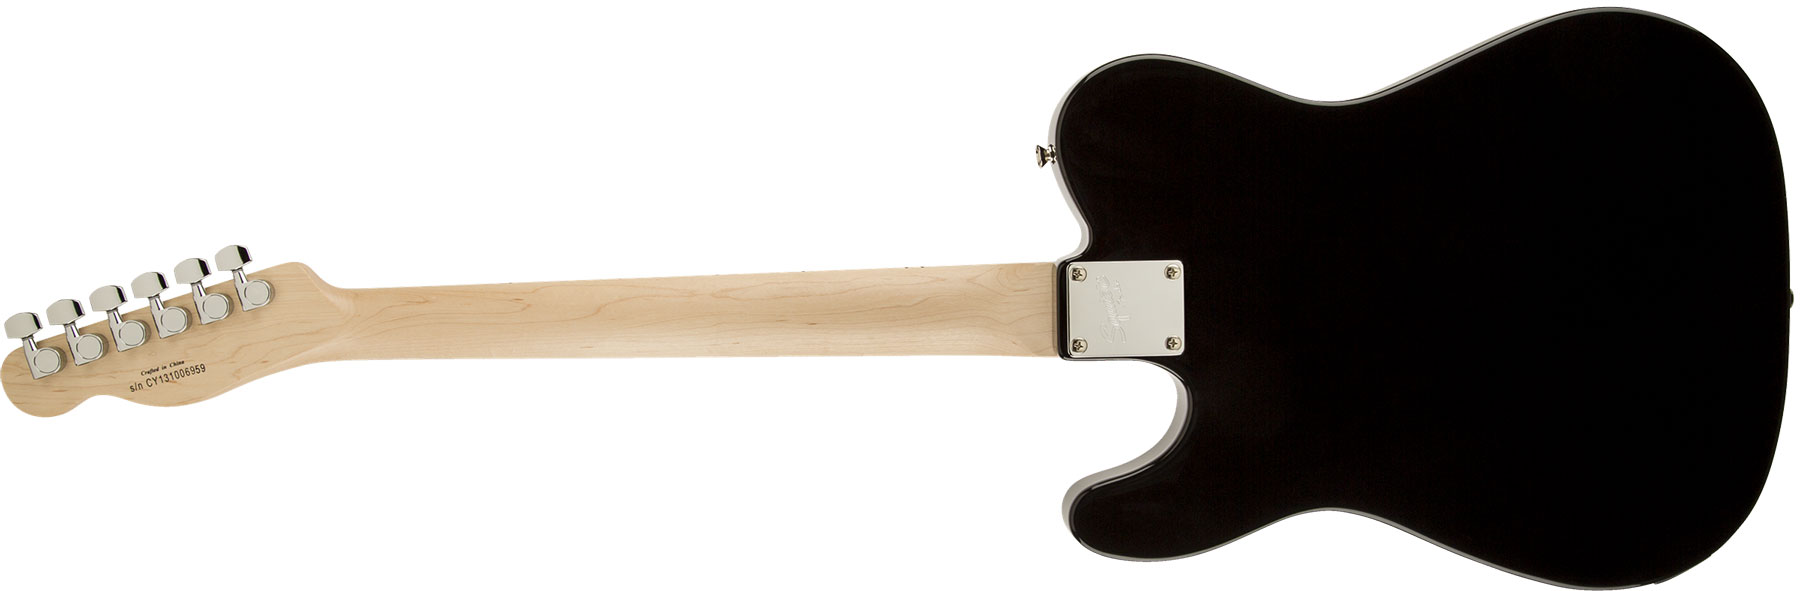 Squier Tele Affinity Series Mn - Black - Guitarra eléctrica con forma de tel - Variation 4